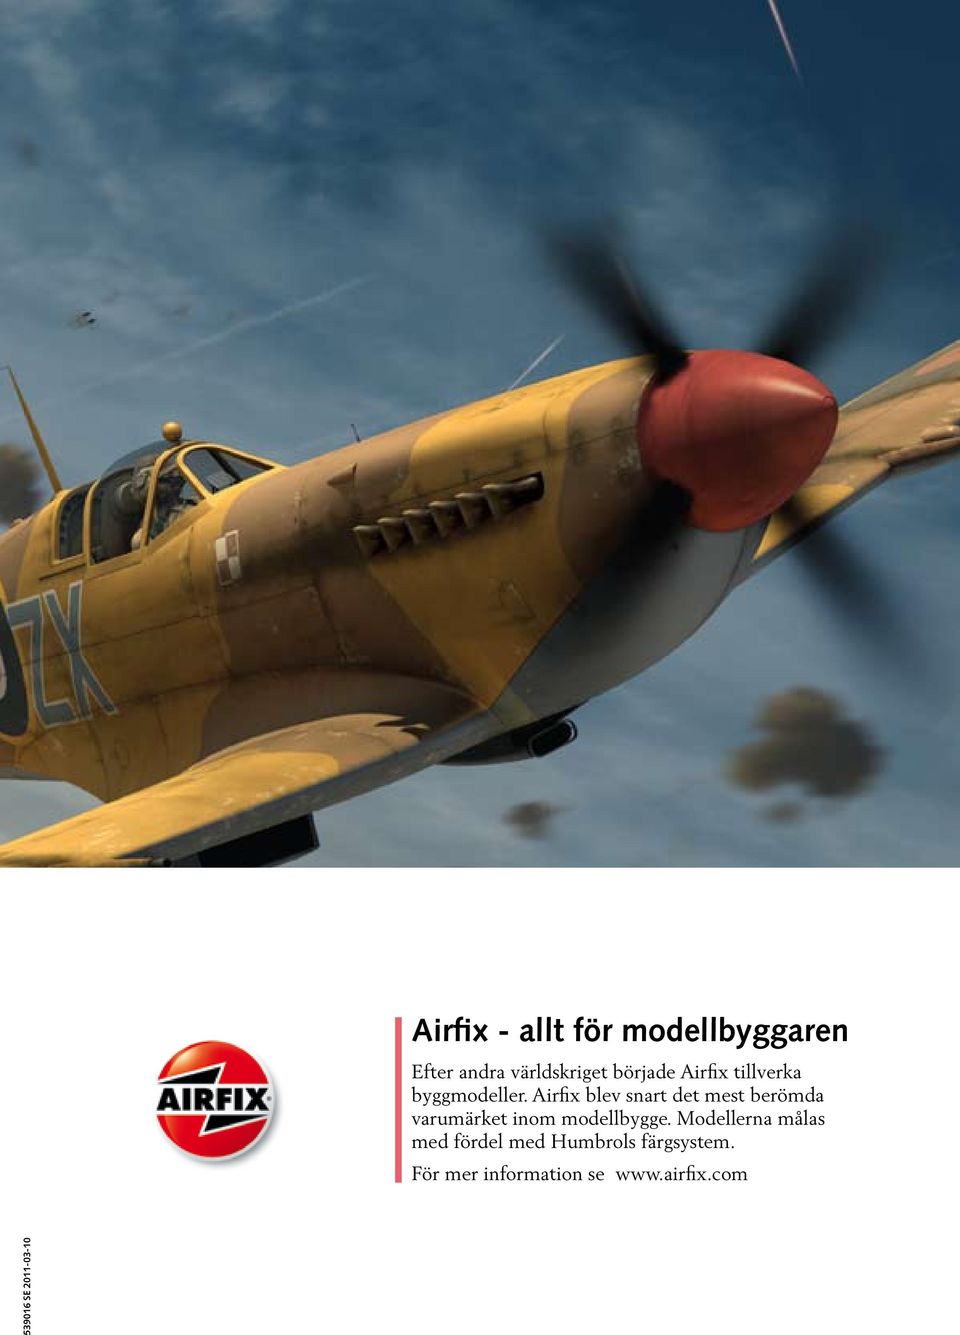 Airfix blev snart det mest berömda varumärket inom modellbygge.